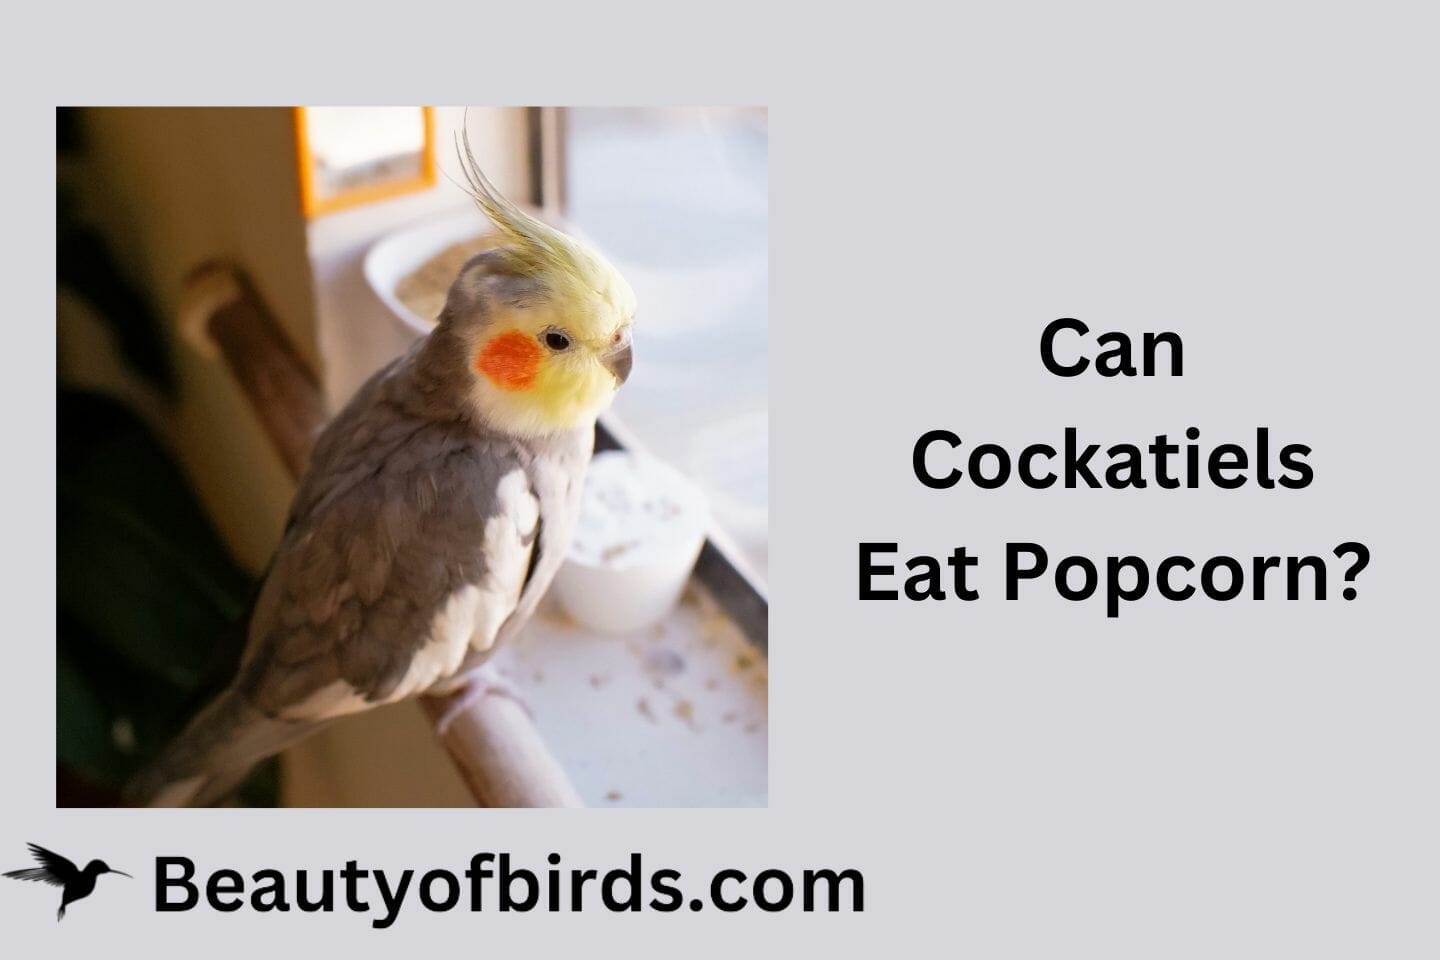 Can Cockatiels Eat Popcorn